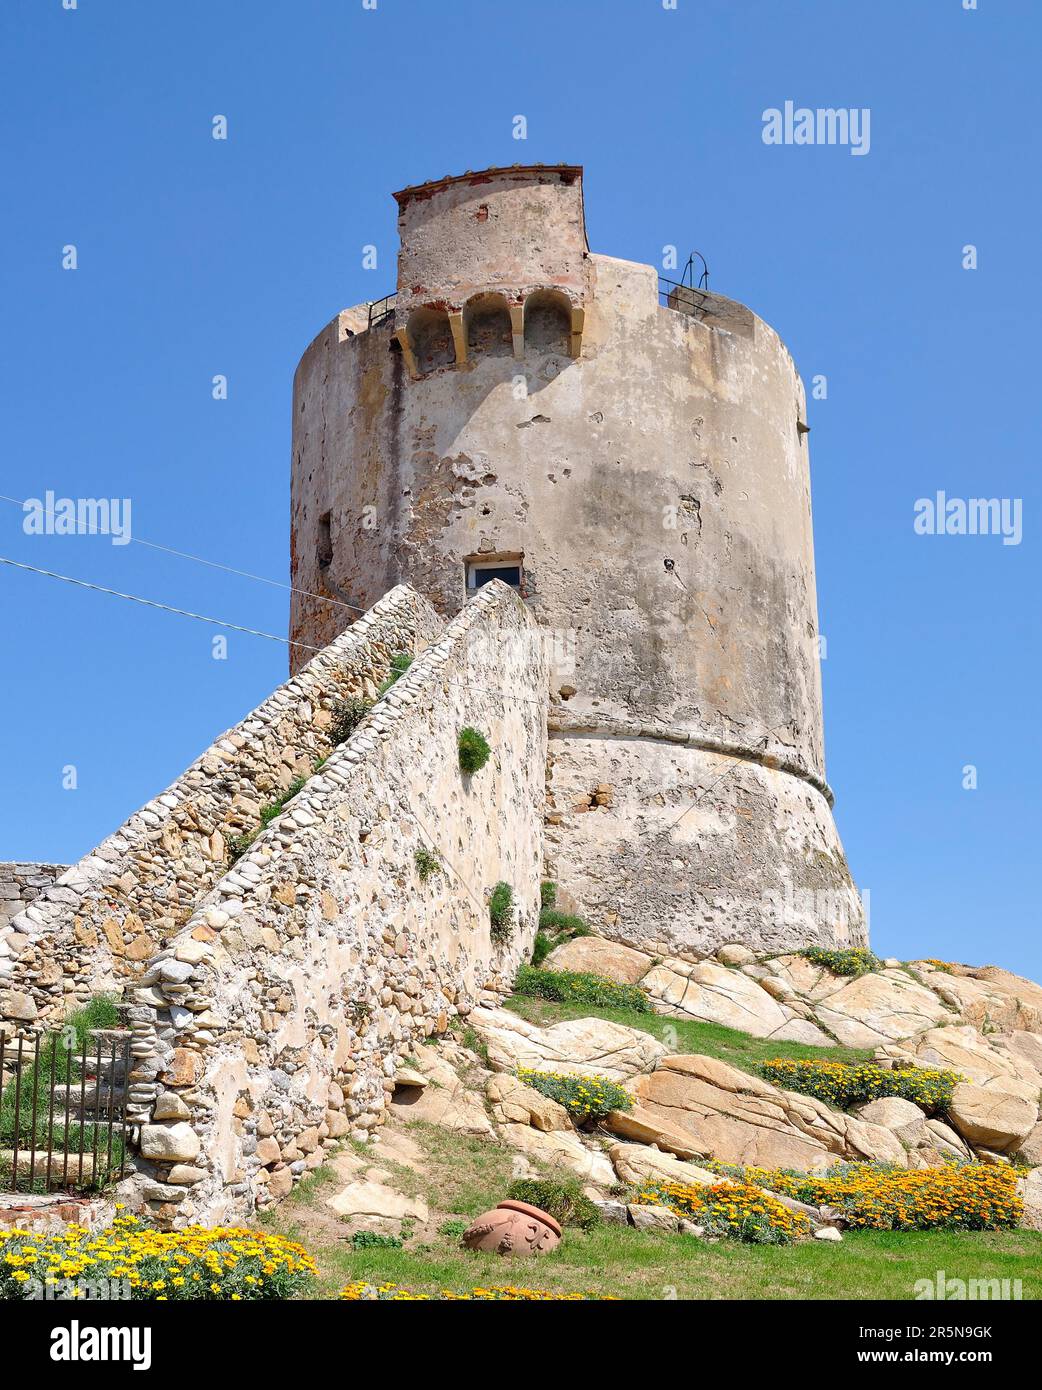 Saracen Tower in Marciana Marina on the island of Elba, Tuscany, Mediterranean Sea, Italy Stock Photo